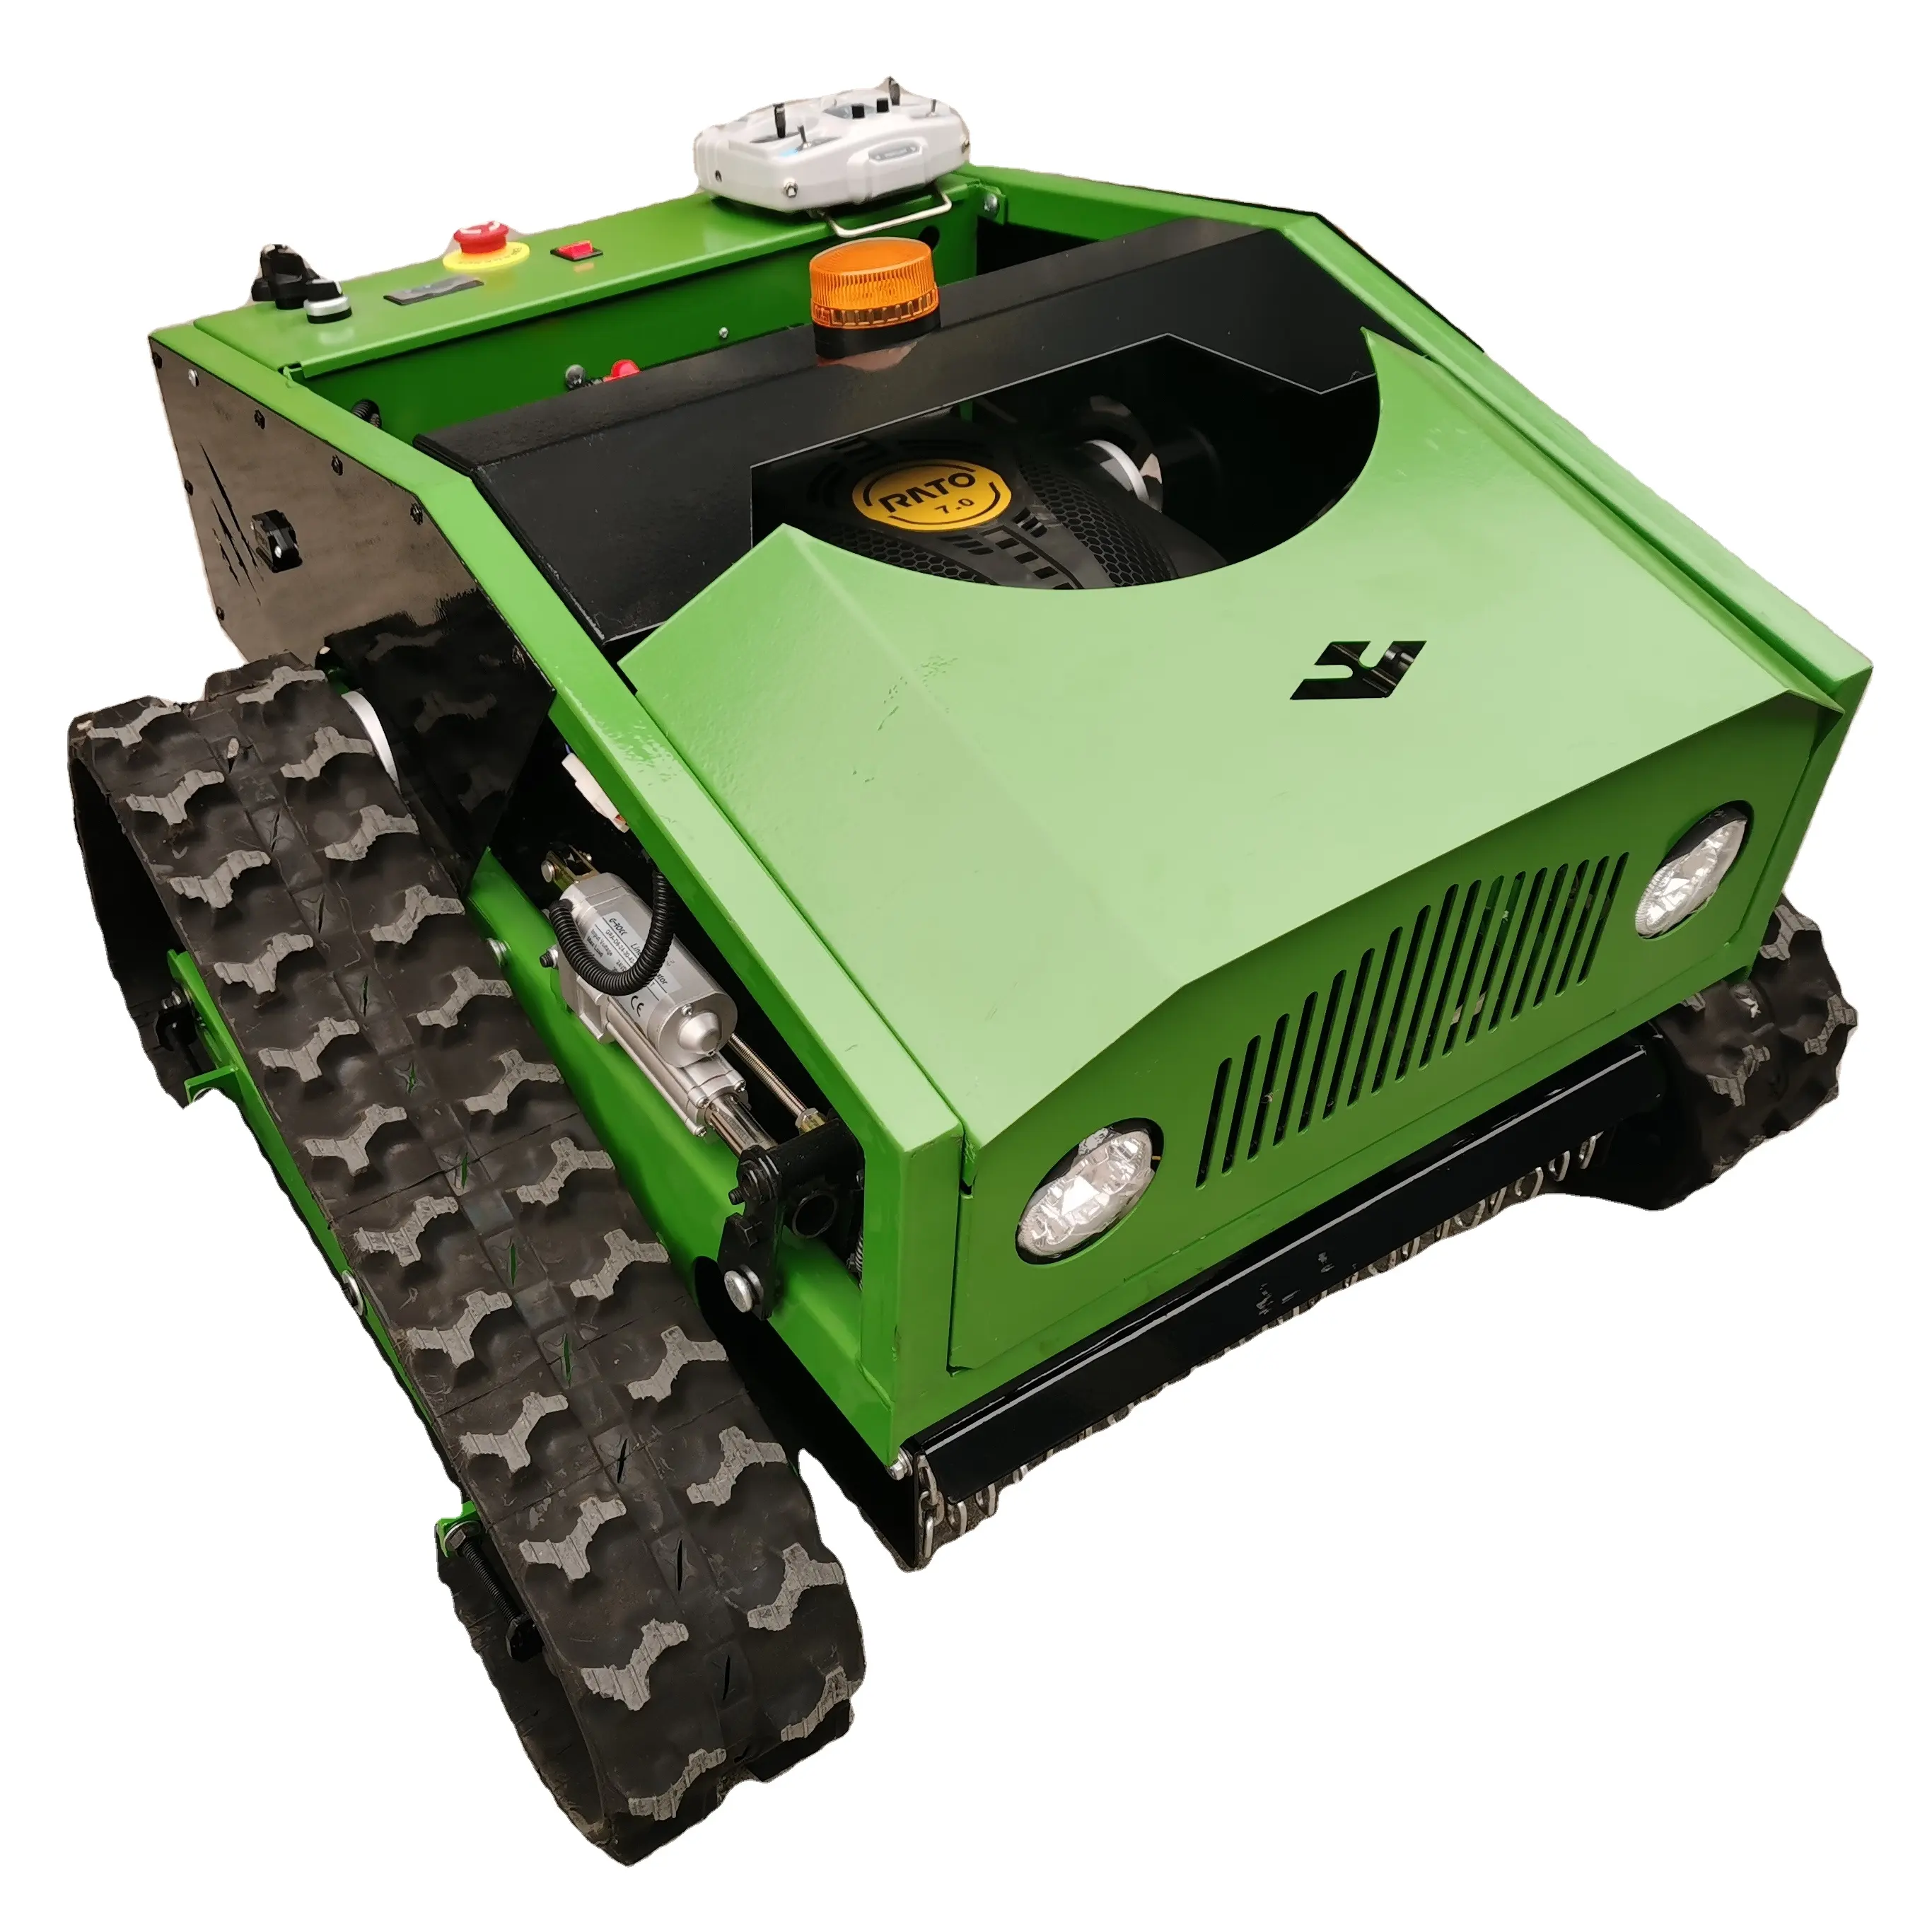 ขายเครื่องตัดหญ้าหุ่นยนต์ตีนตะขาบคุณภาพสูง 23HP พร้อมเครื่องตัดหญ้าควบคุมระยะไกล